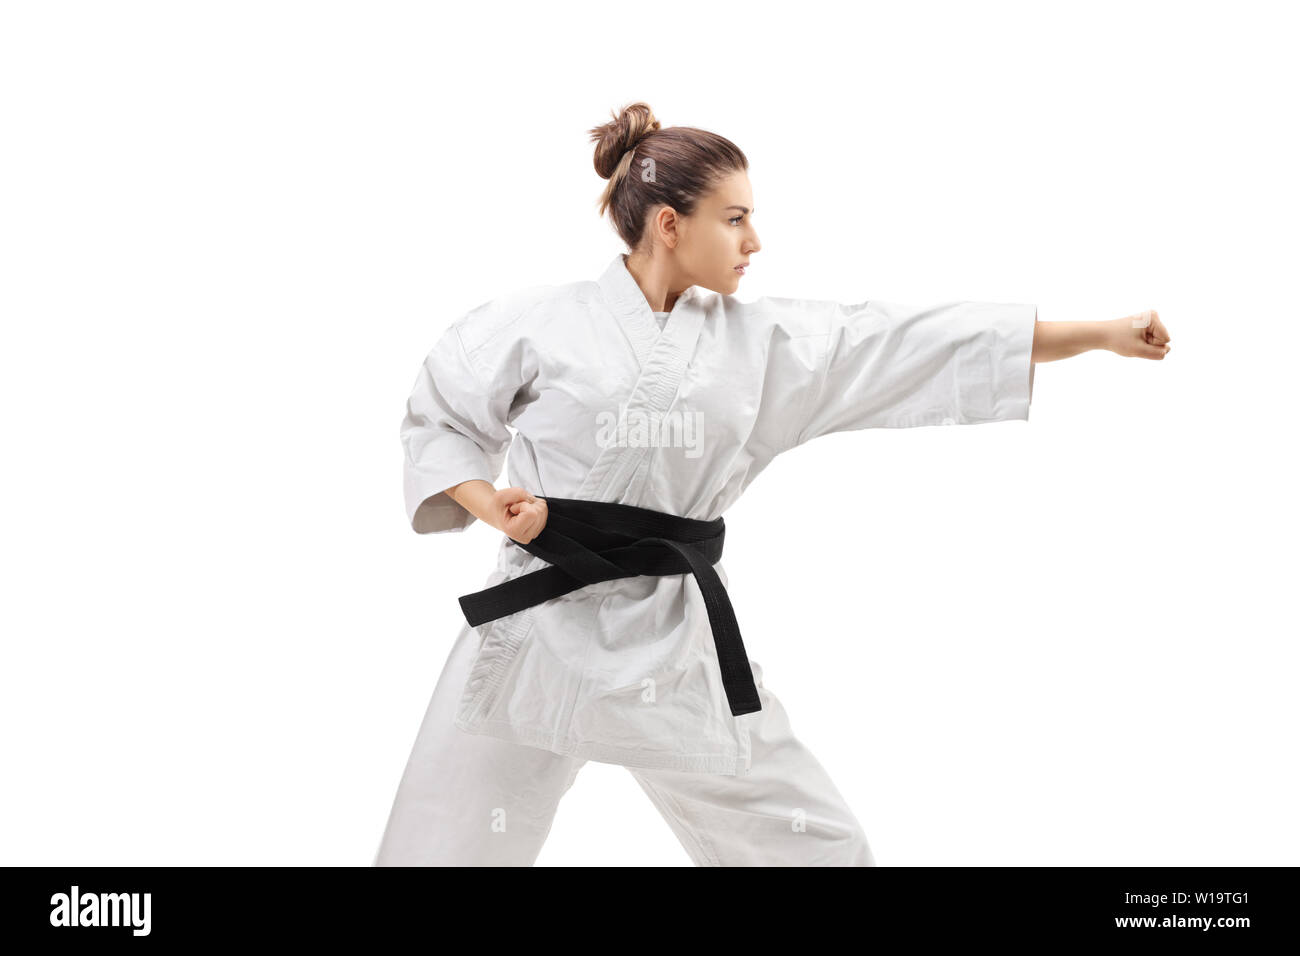 Female practicing karate isolated on white background Stock Photo